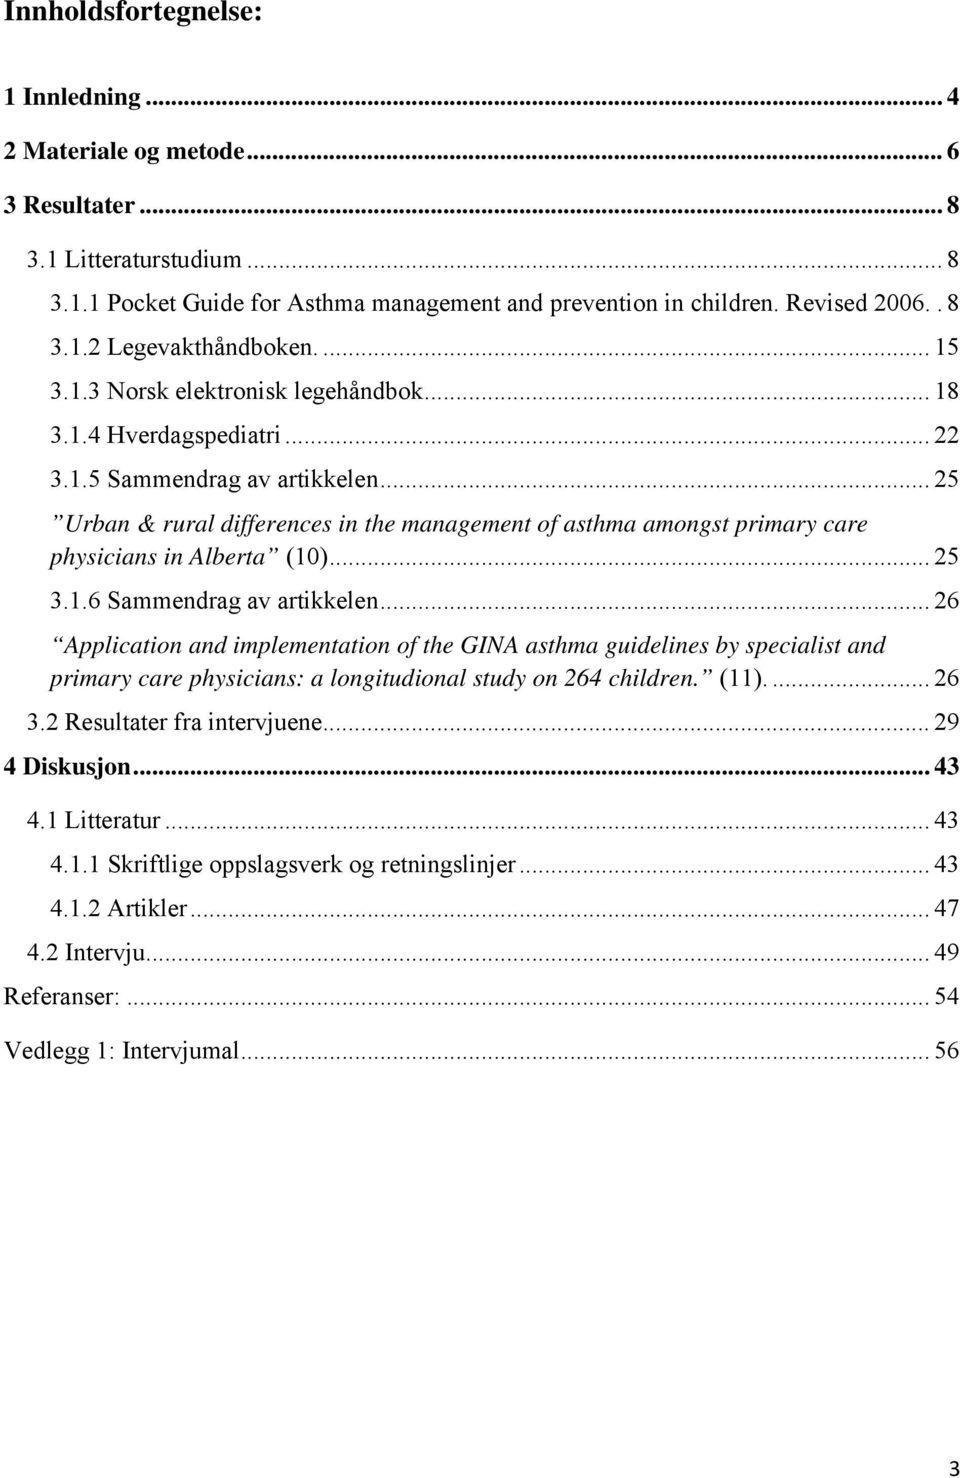 .. 25 Urban & rural differences in the management of asthma amongst primary care physicians in Alberta (10)... 25 3.1.6 Sammendrag av artikkelen.